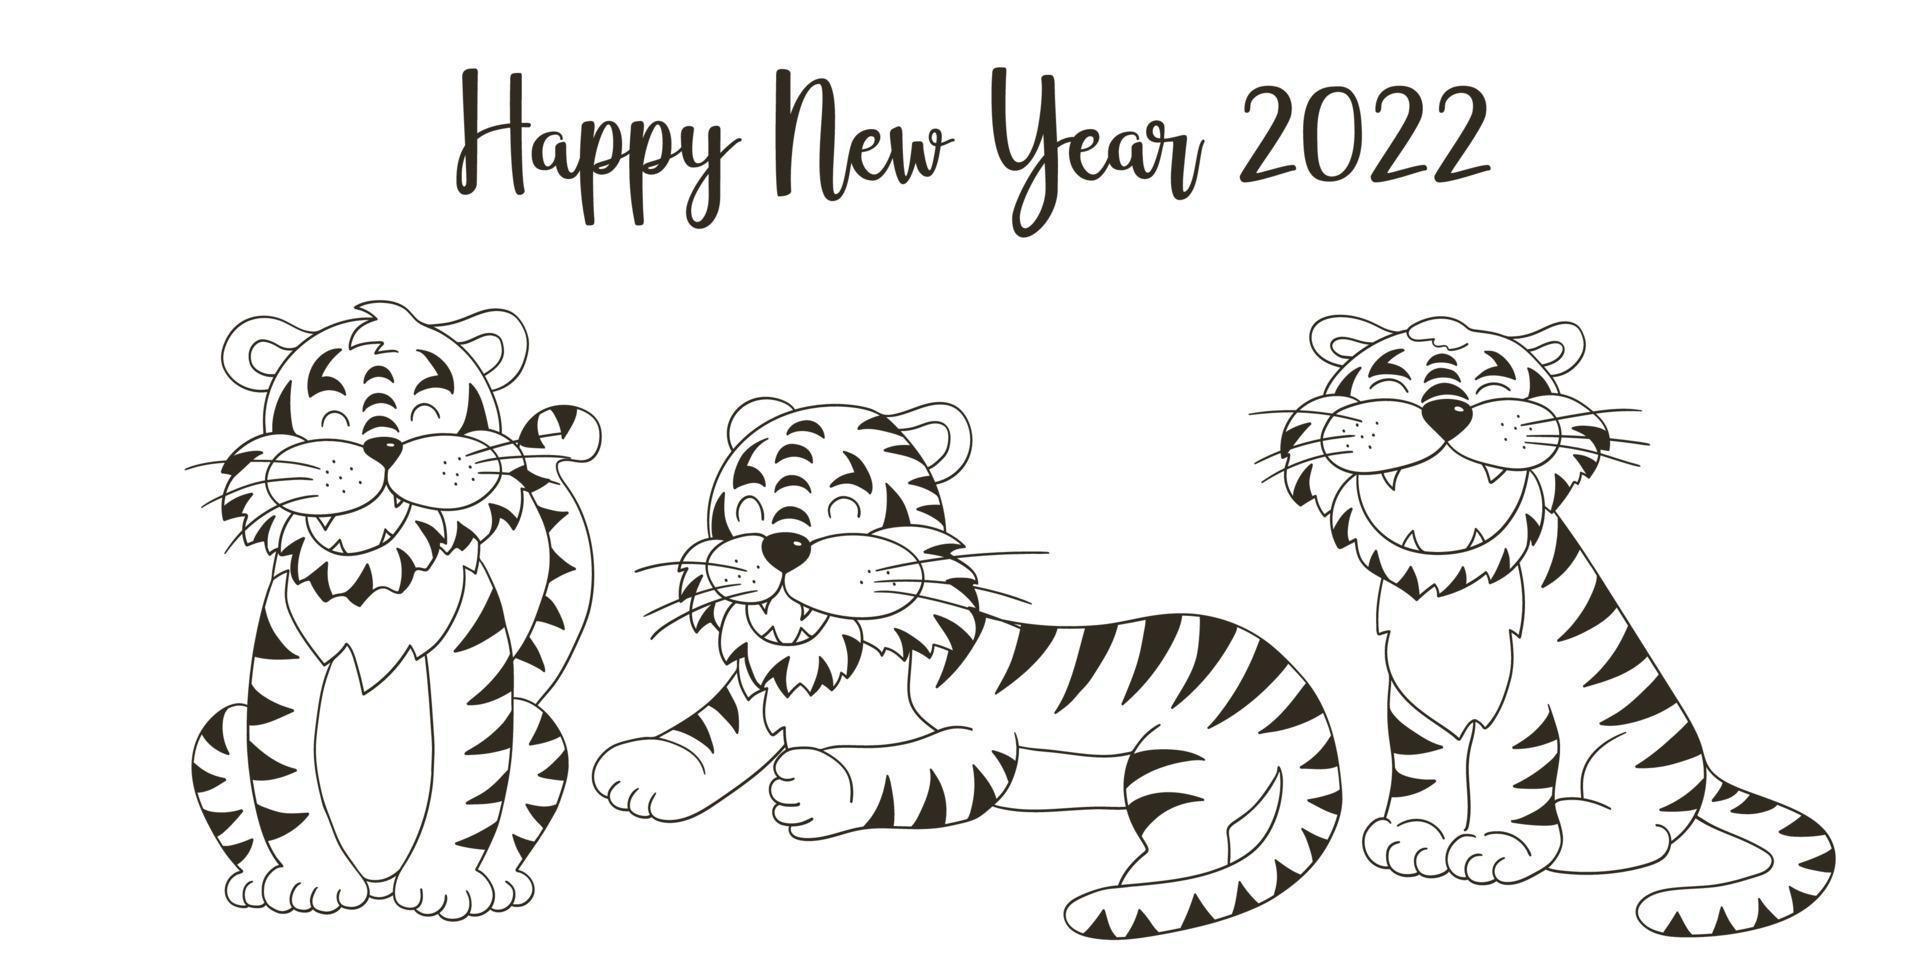 tijger in de hand tekenen stijl. symbool van 2022. nieuwjaar 2022 vector